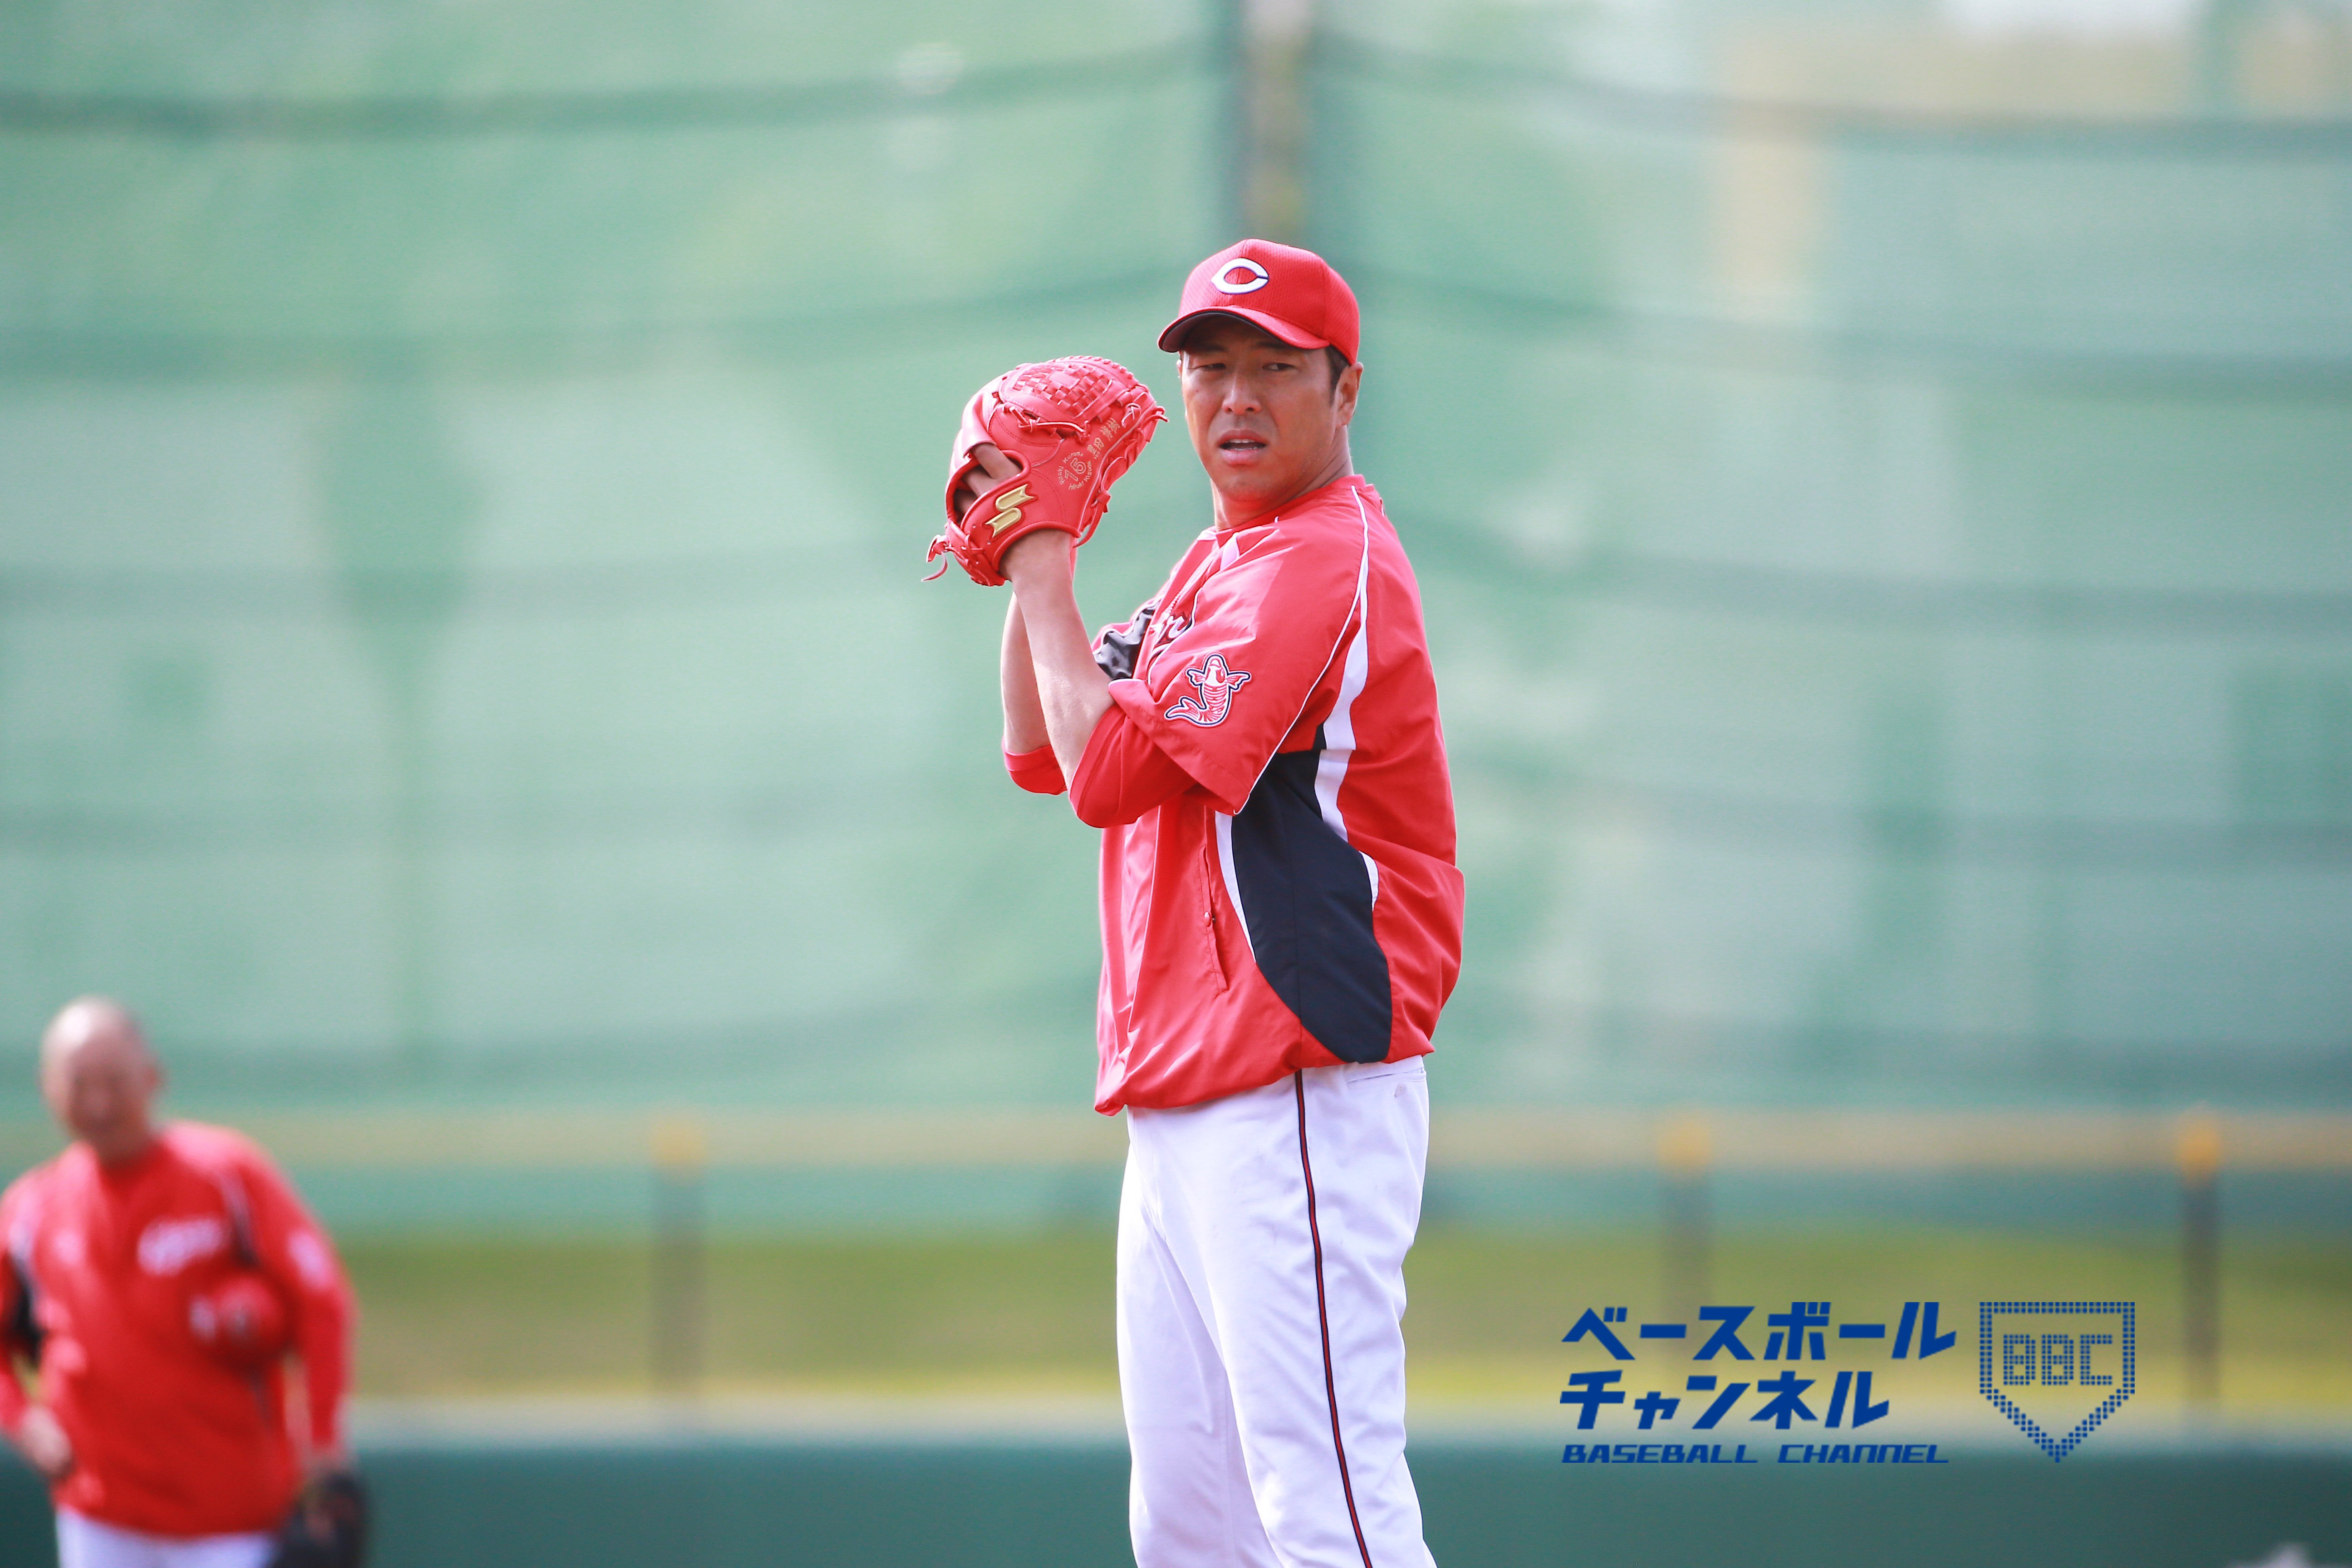 野球人の言霊12 エリートとは対極の野球人生 広島 黒田博樹の信念 ベースボールチャンネル Baseball Channel